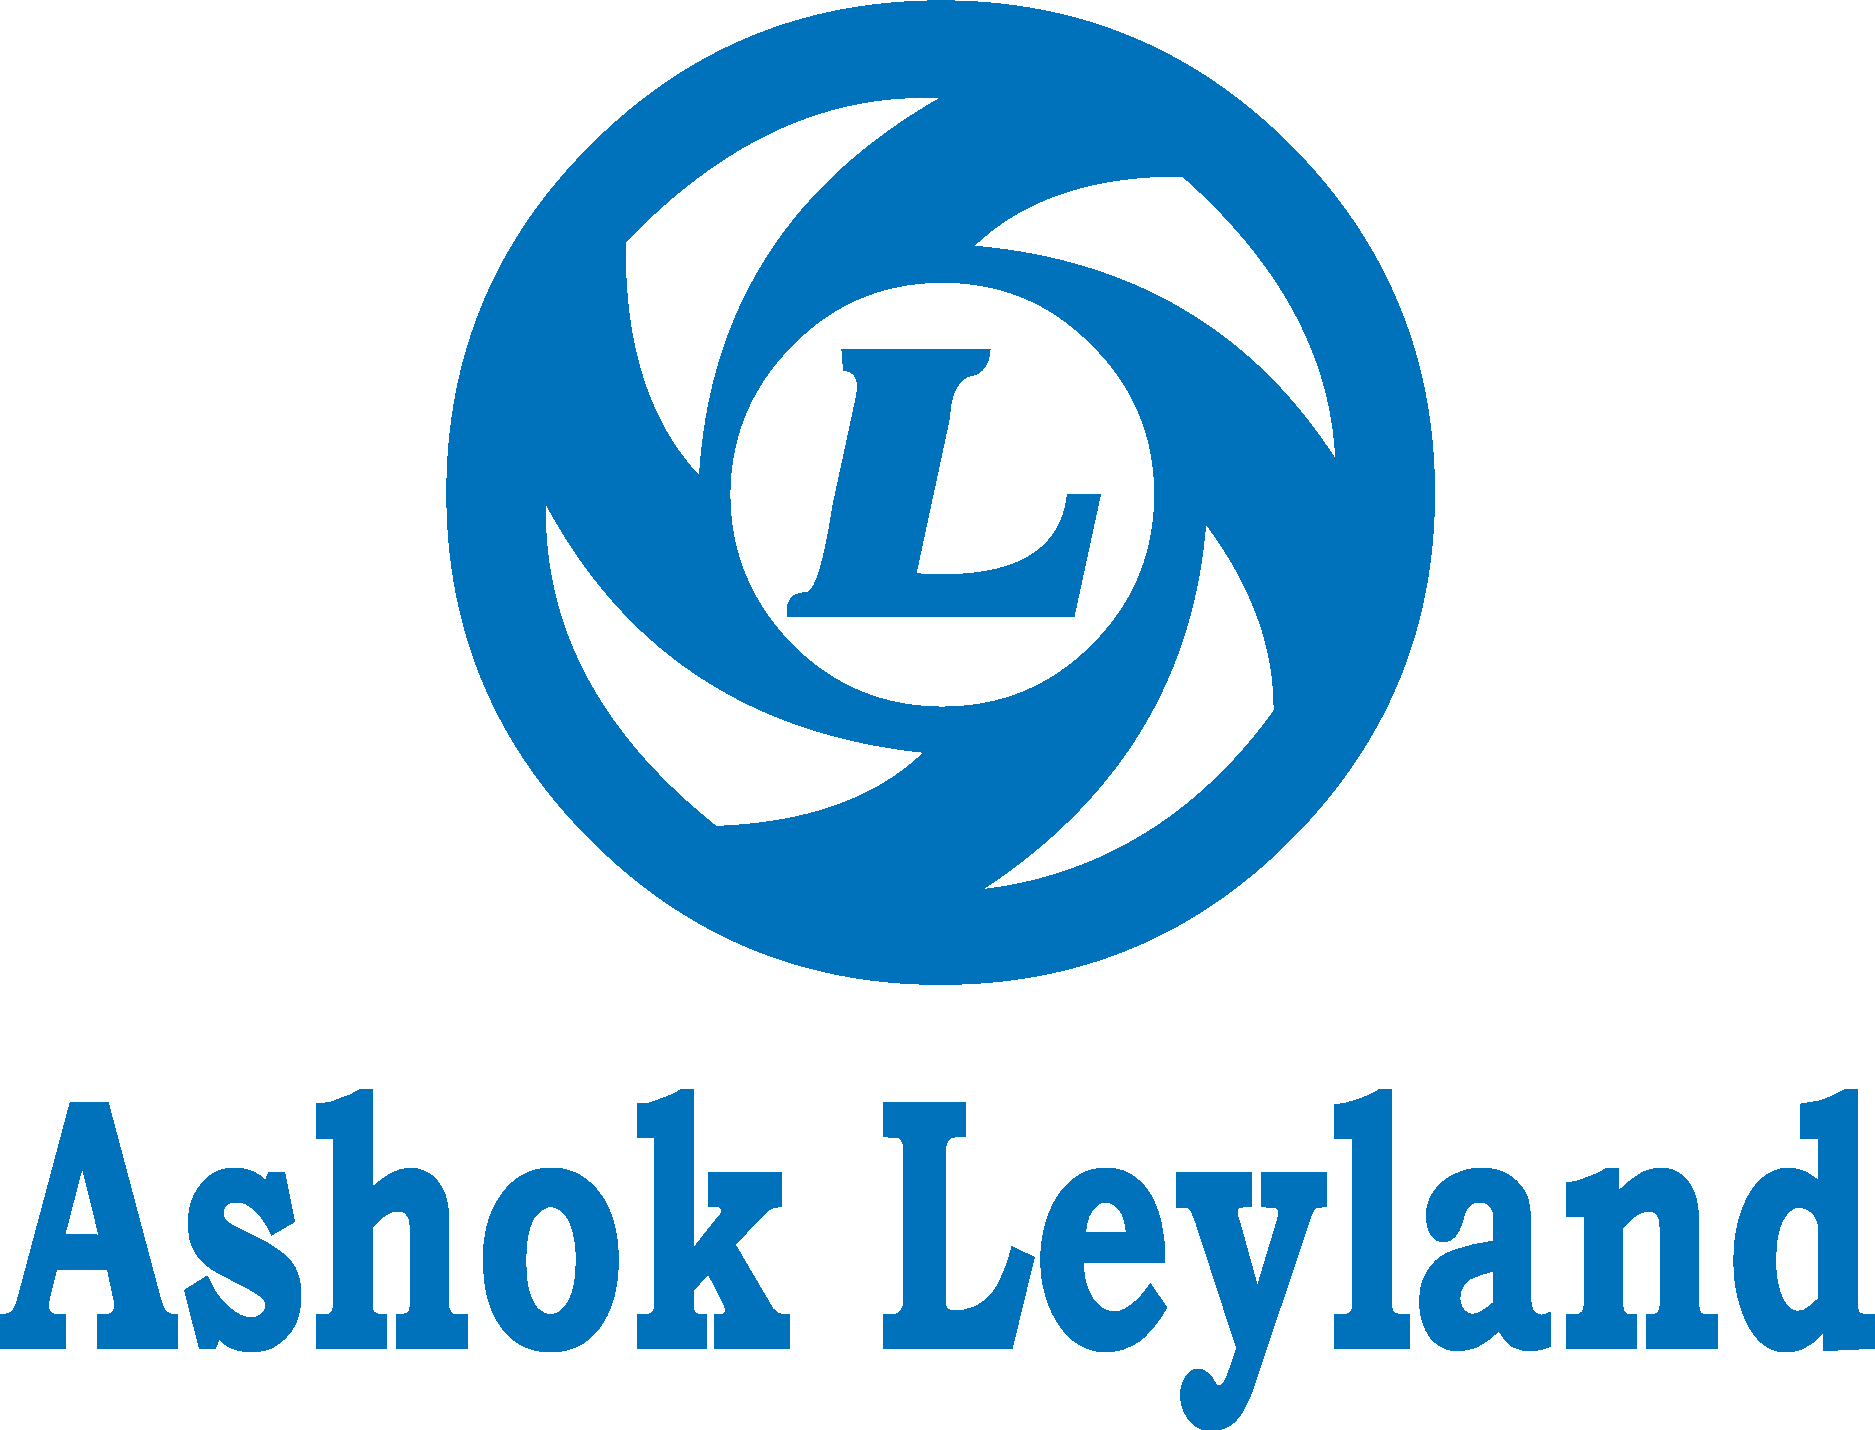 The Ashok Leyland School